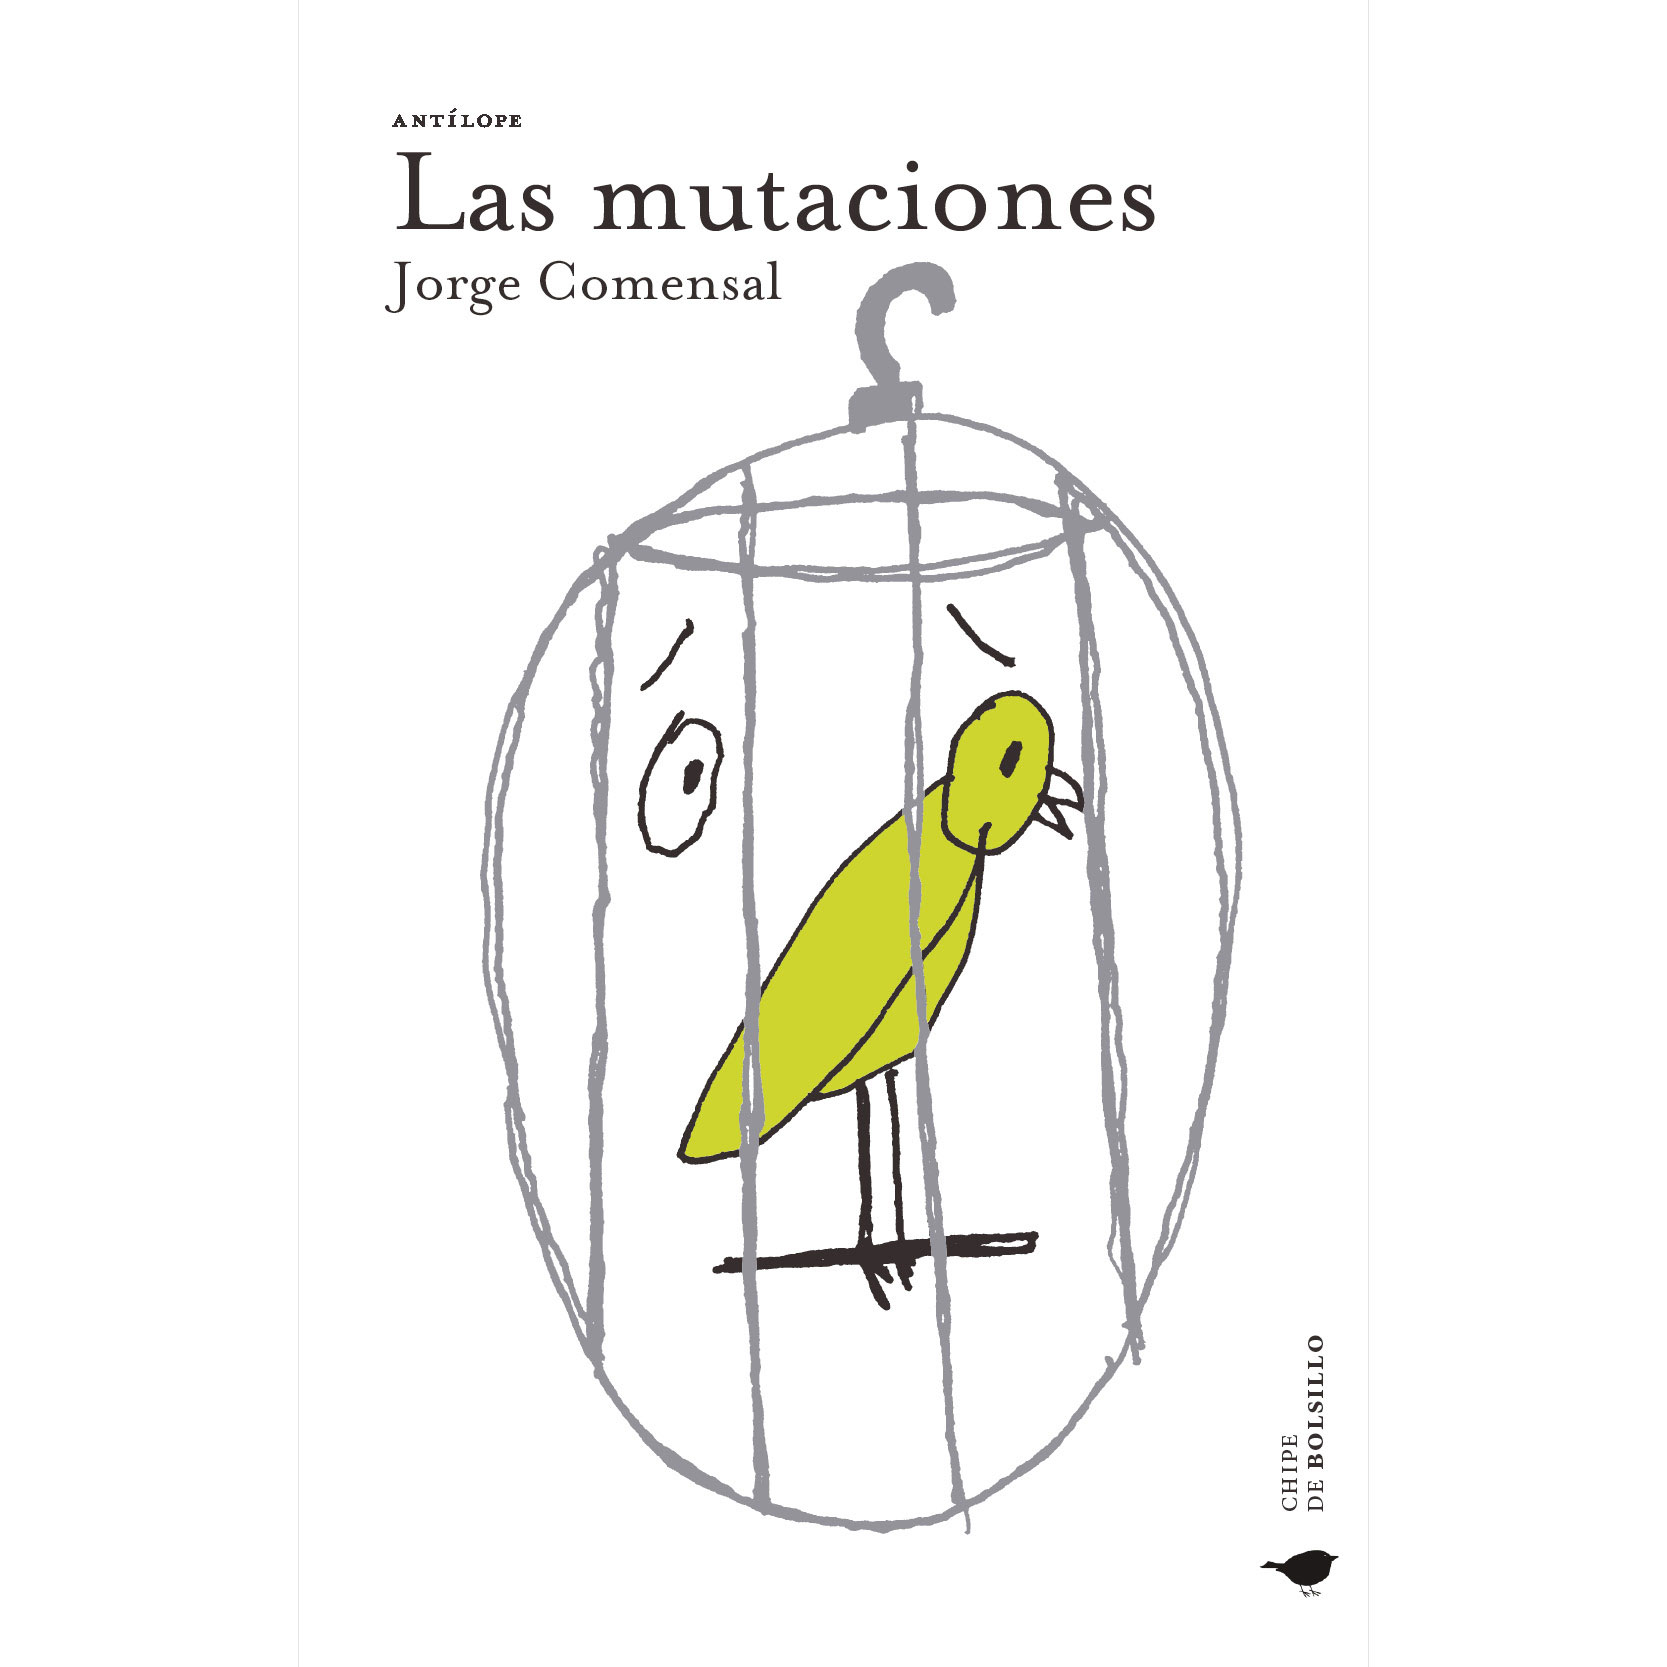 Comensal, Jorge. (2017). Las mutaciones. México:Antílope. 2a Edición.